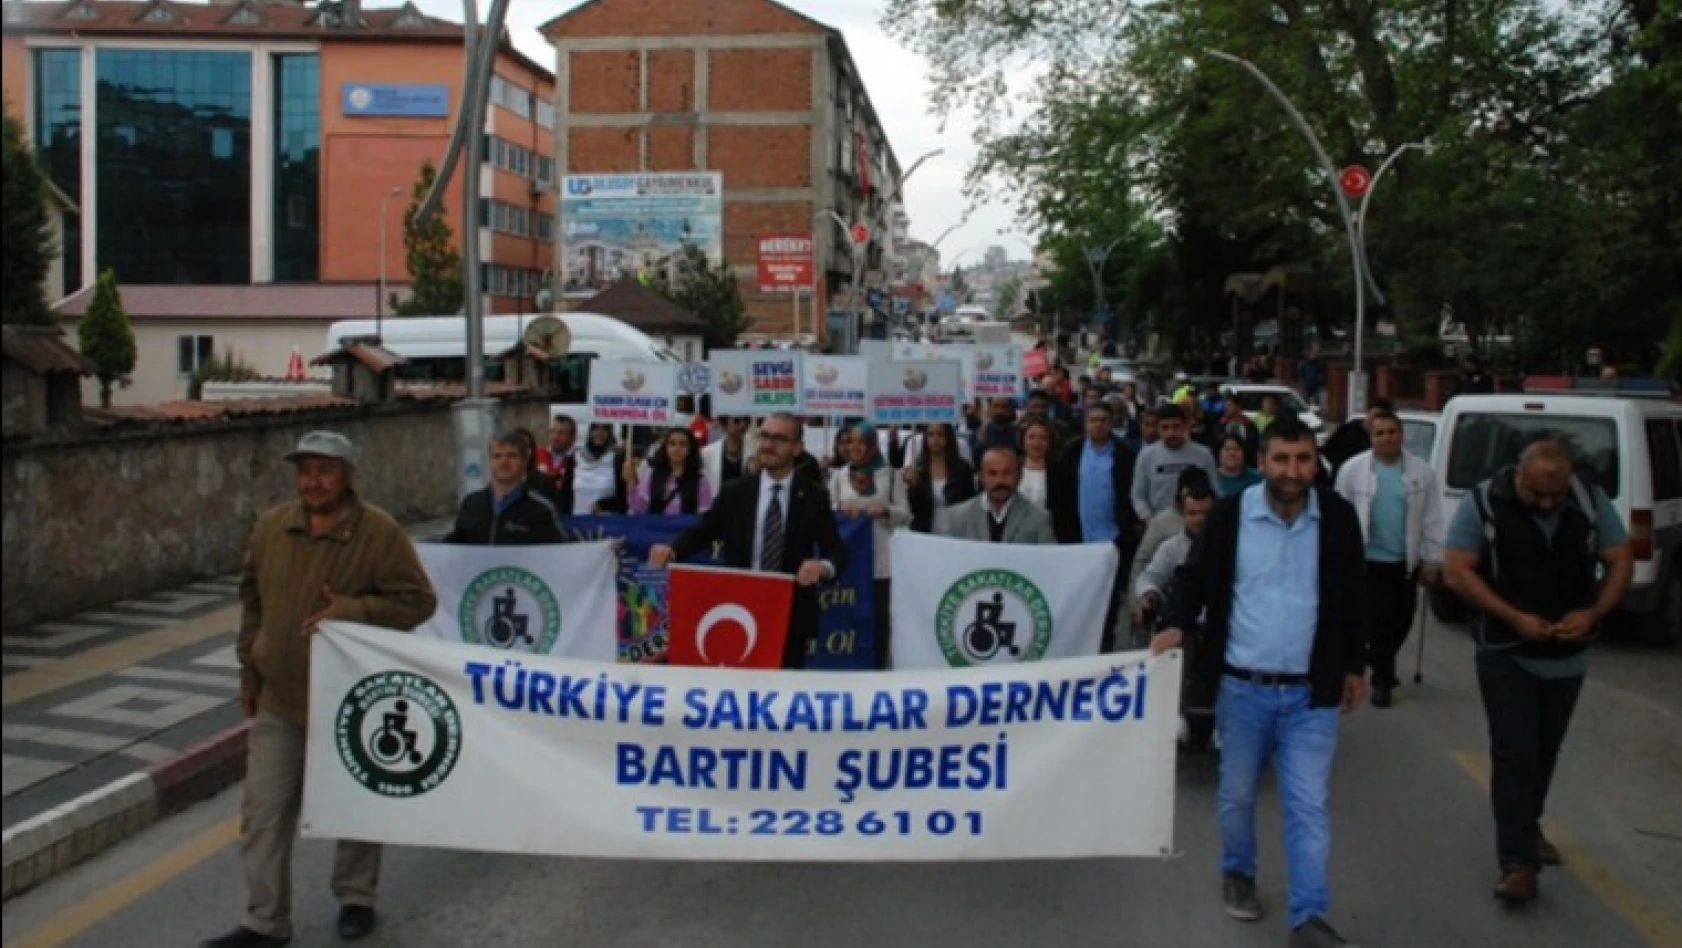 Engelsiz bir Bartın ve Türkiye için yürüdüler